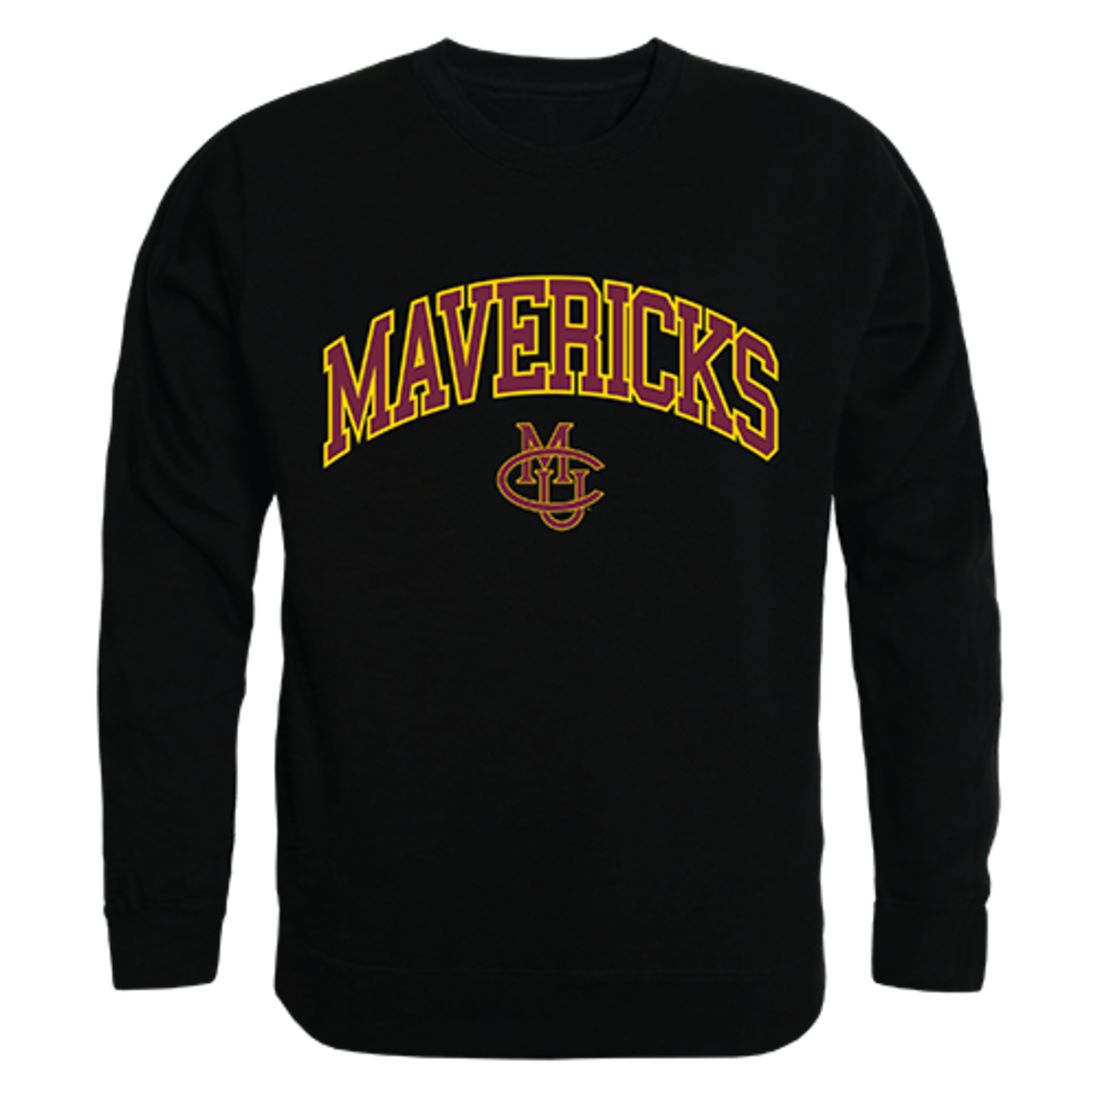 CMU Colorado Mesa University Campus Crewneck Pullover Sweatshirt Sweater Black-Campus-Wardrobe